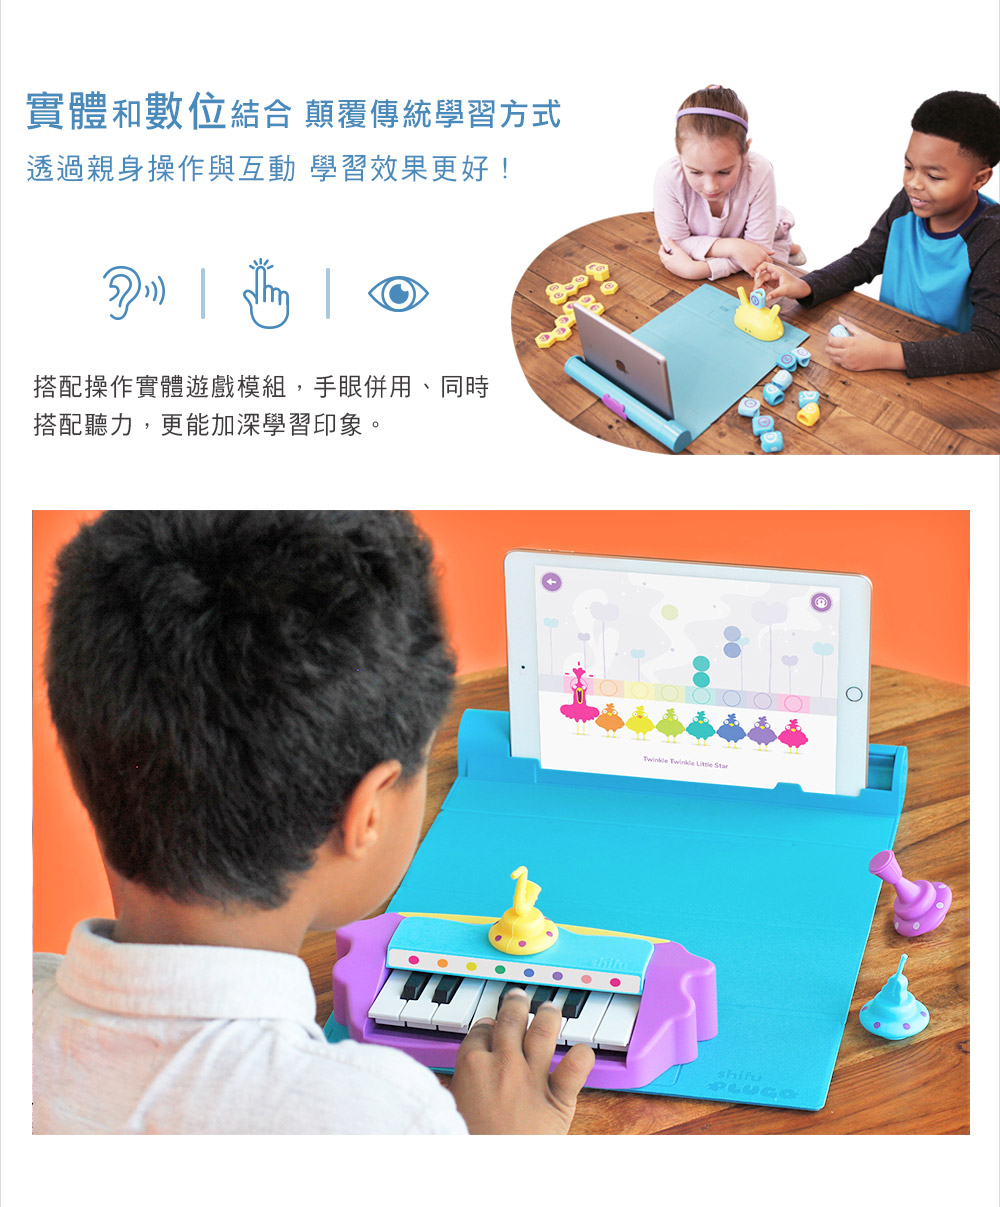 PLUGO 互動式益智教具 樂器曲調 | shifu 互動式玩具